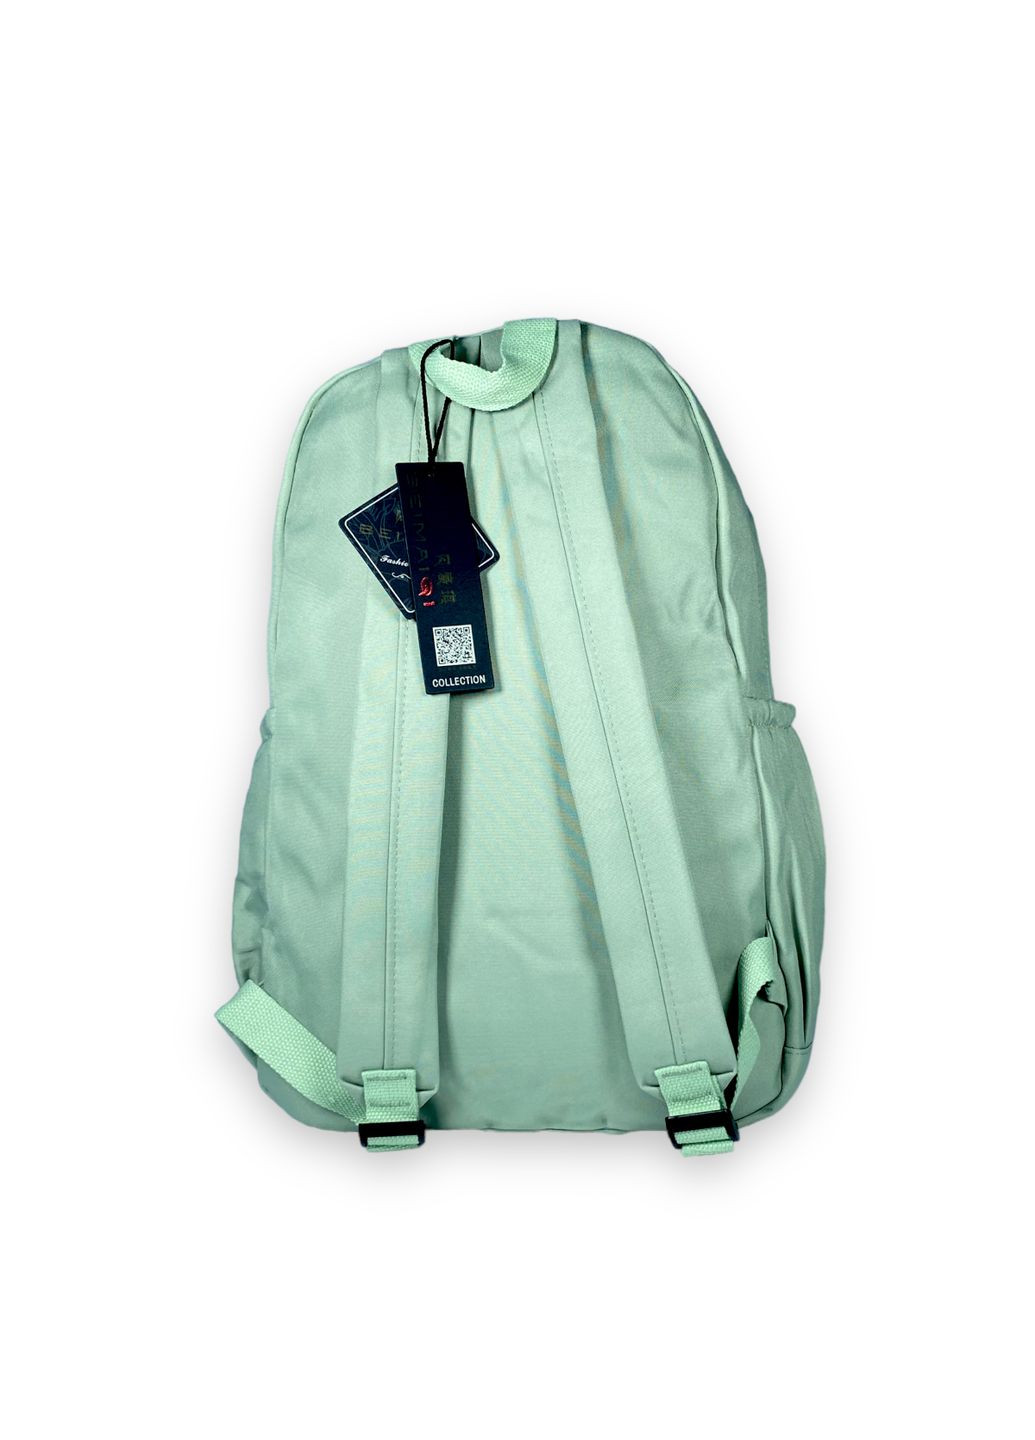 Міський рюкзак 20л один відділ фронтальна кишеня бокові кишені розмір 43*30*16см зелений BeimaiQI (286421734)